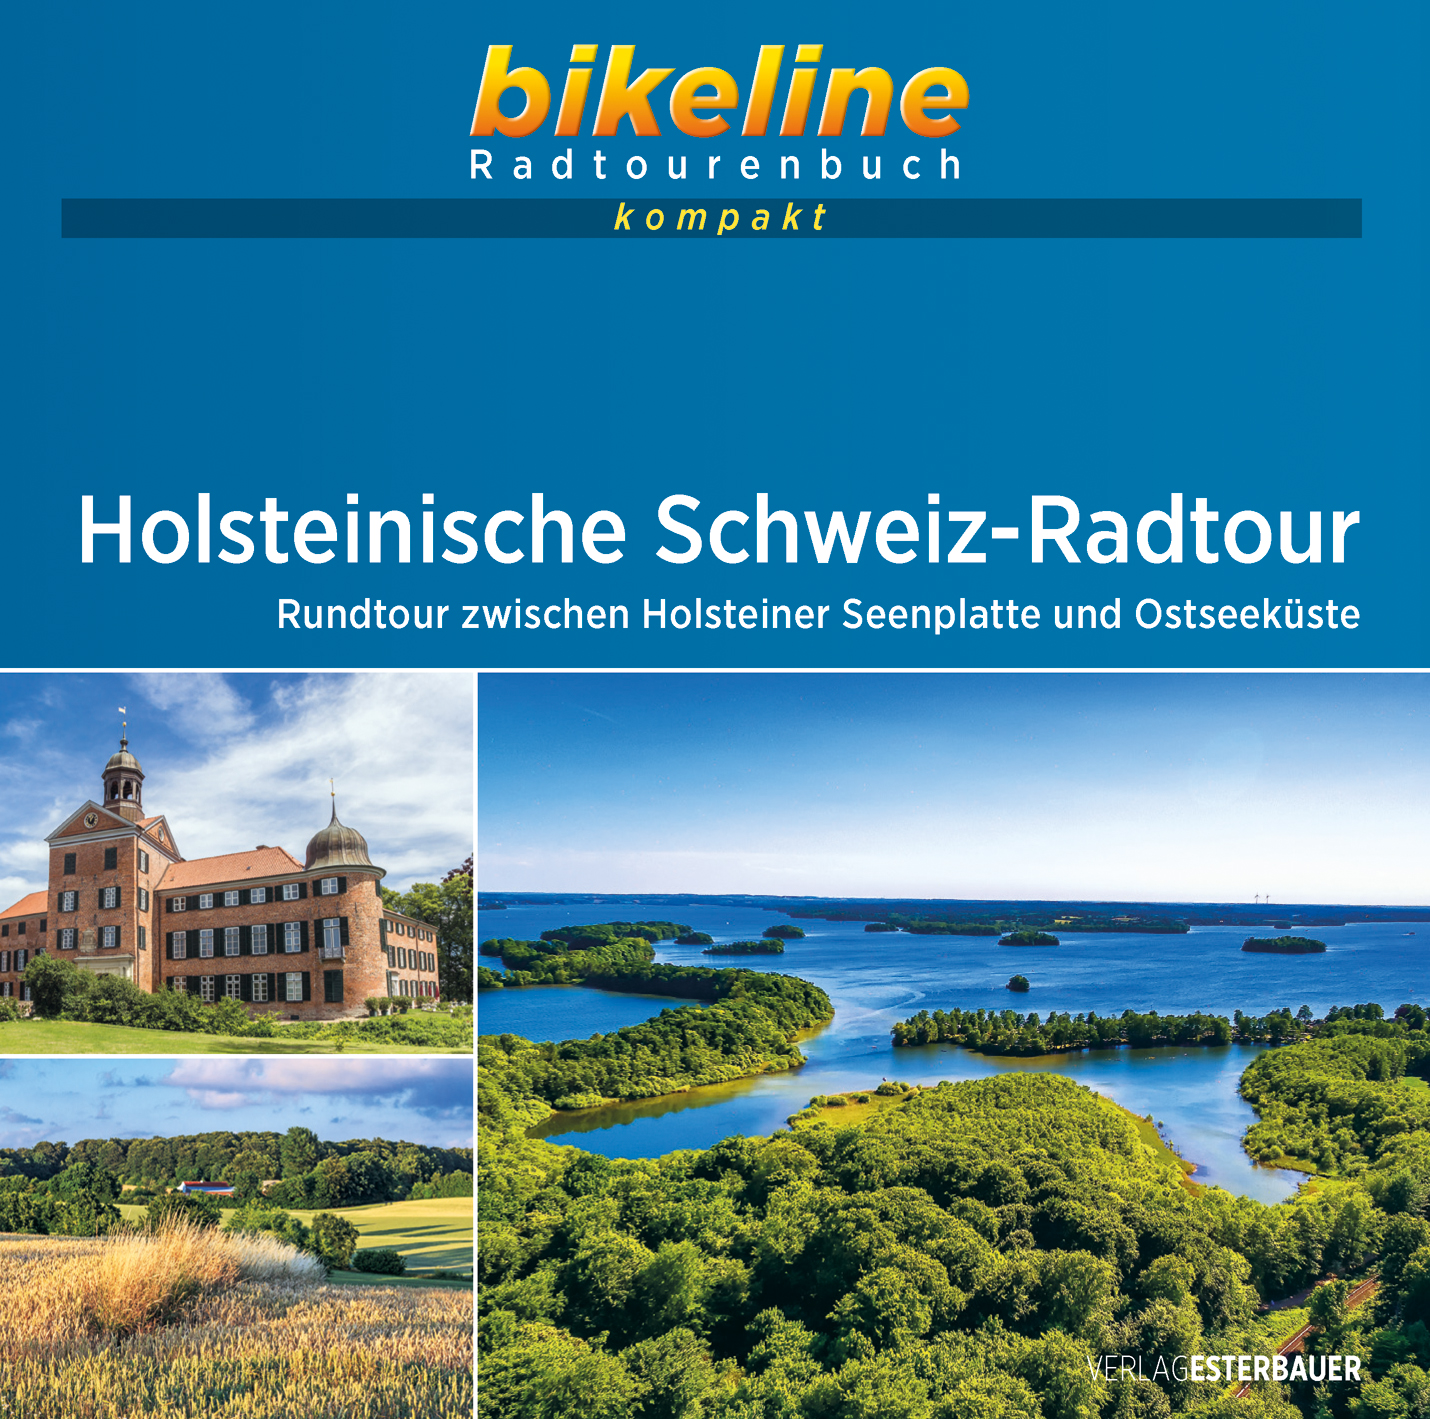 Online bestellen: Fietsgids Bikeline Radtourenbuch kompakt Holsteinische Schweiz-Radtour | Esterbauer